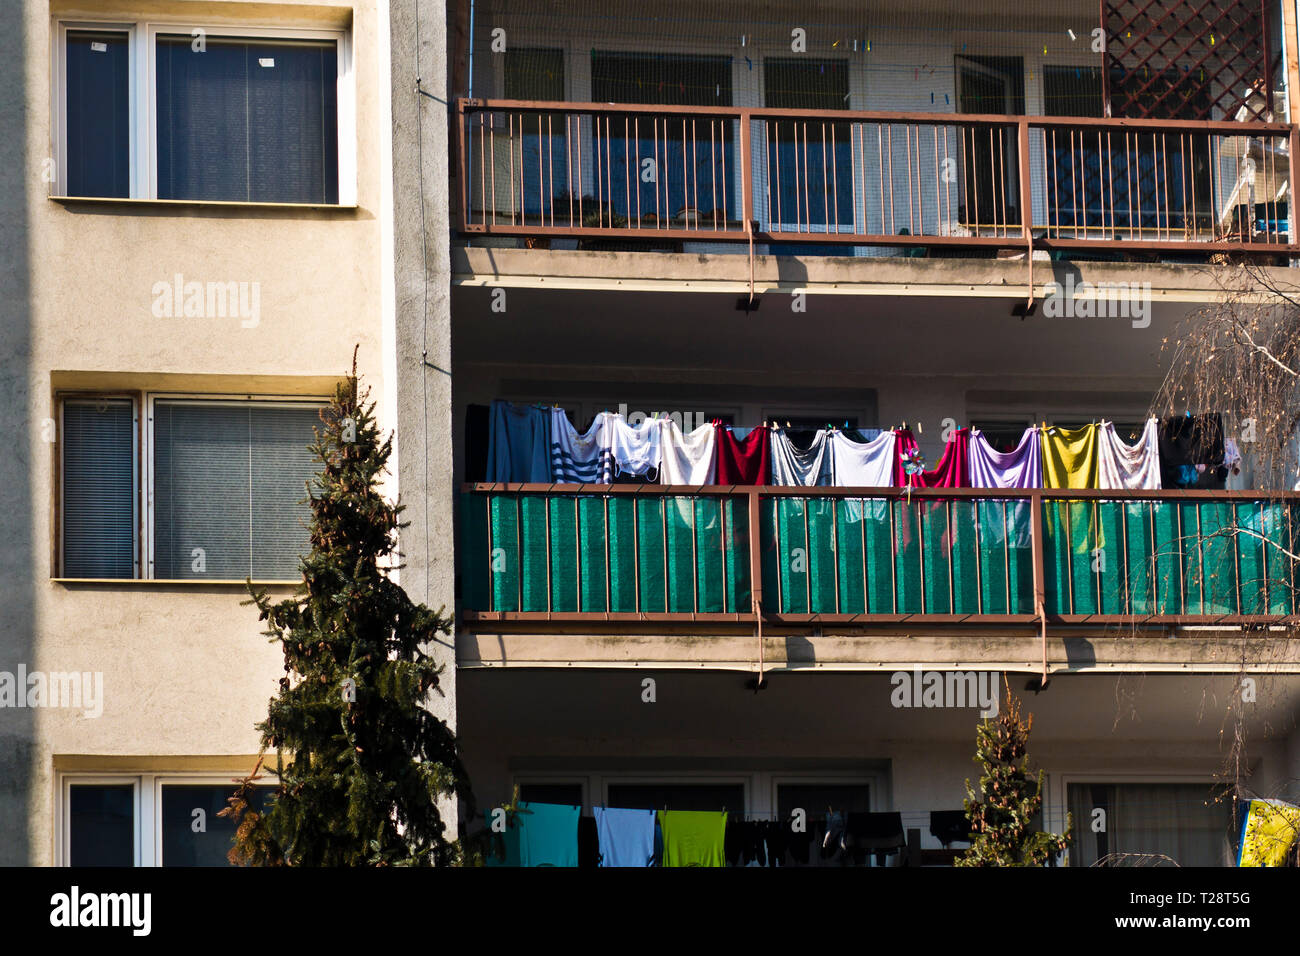 Die Wäsche auf dem Balkon trocknen Stockfotografie - Alamy